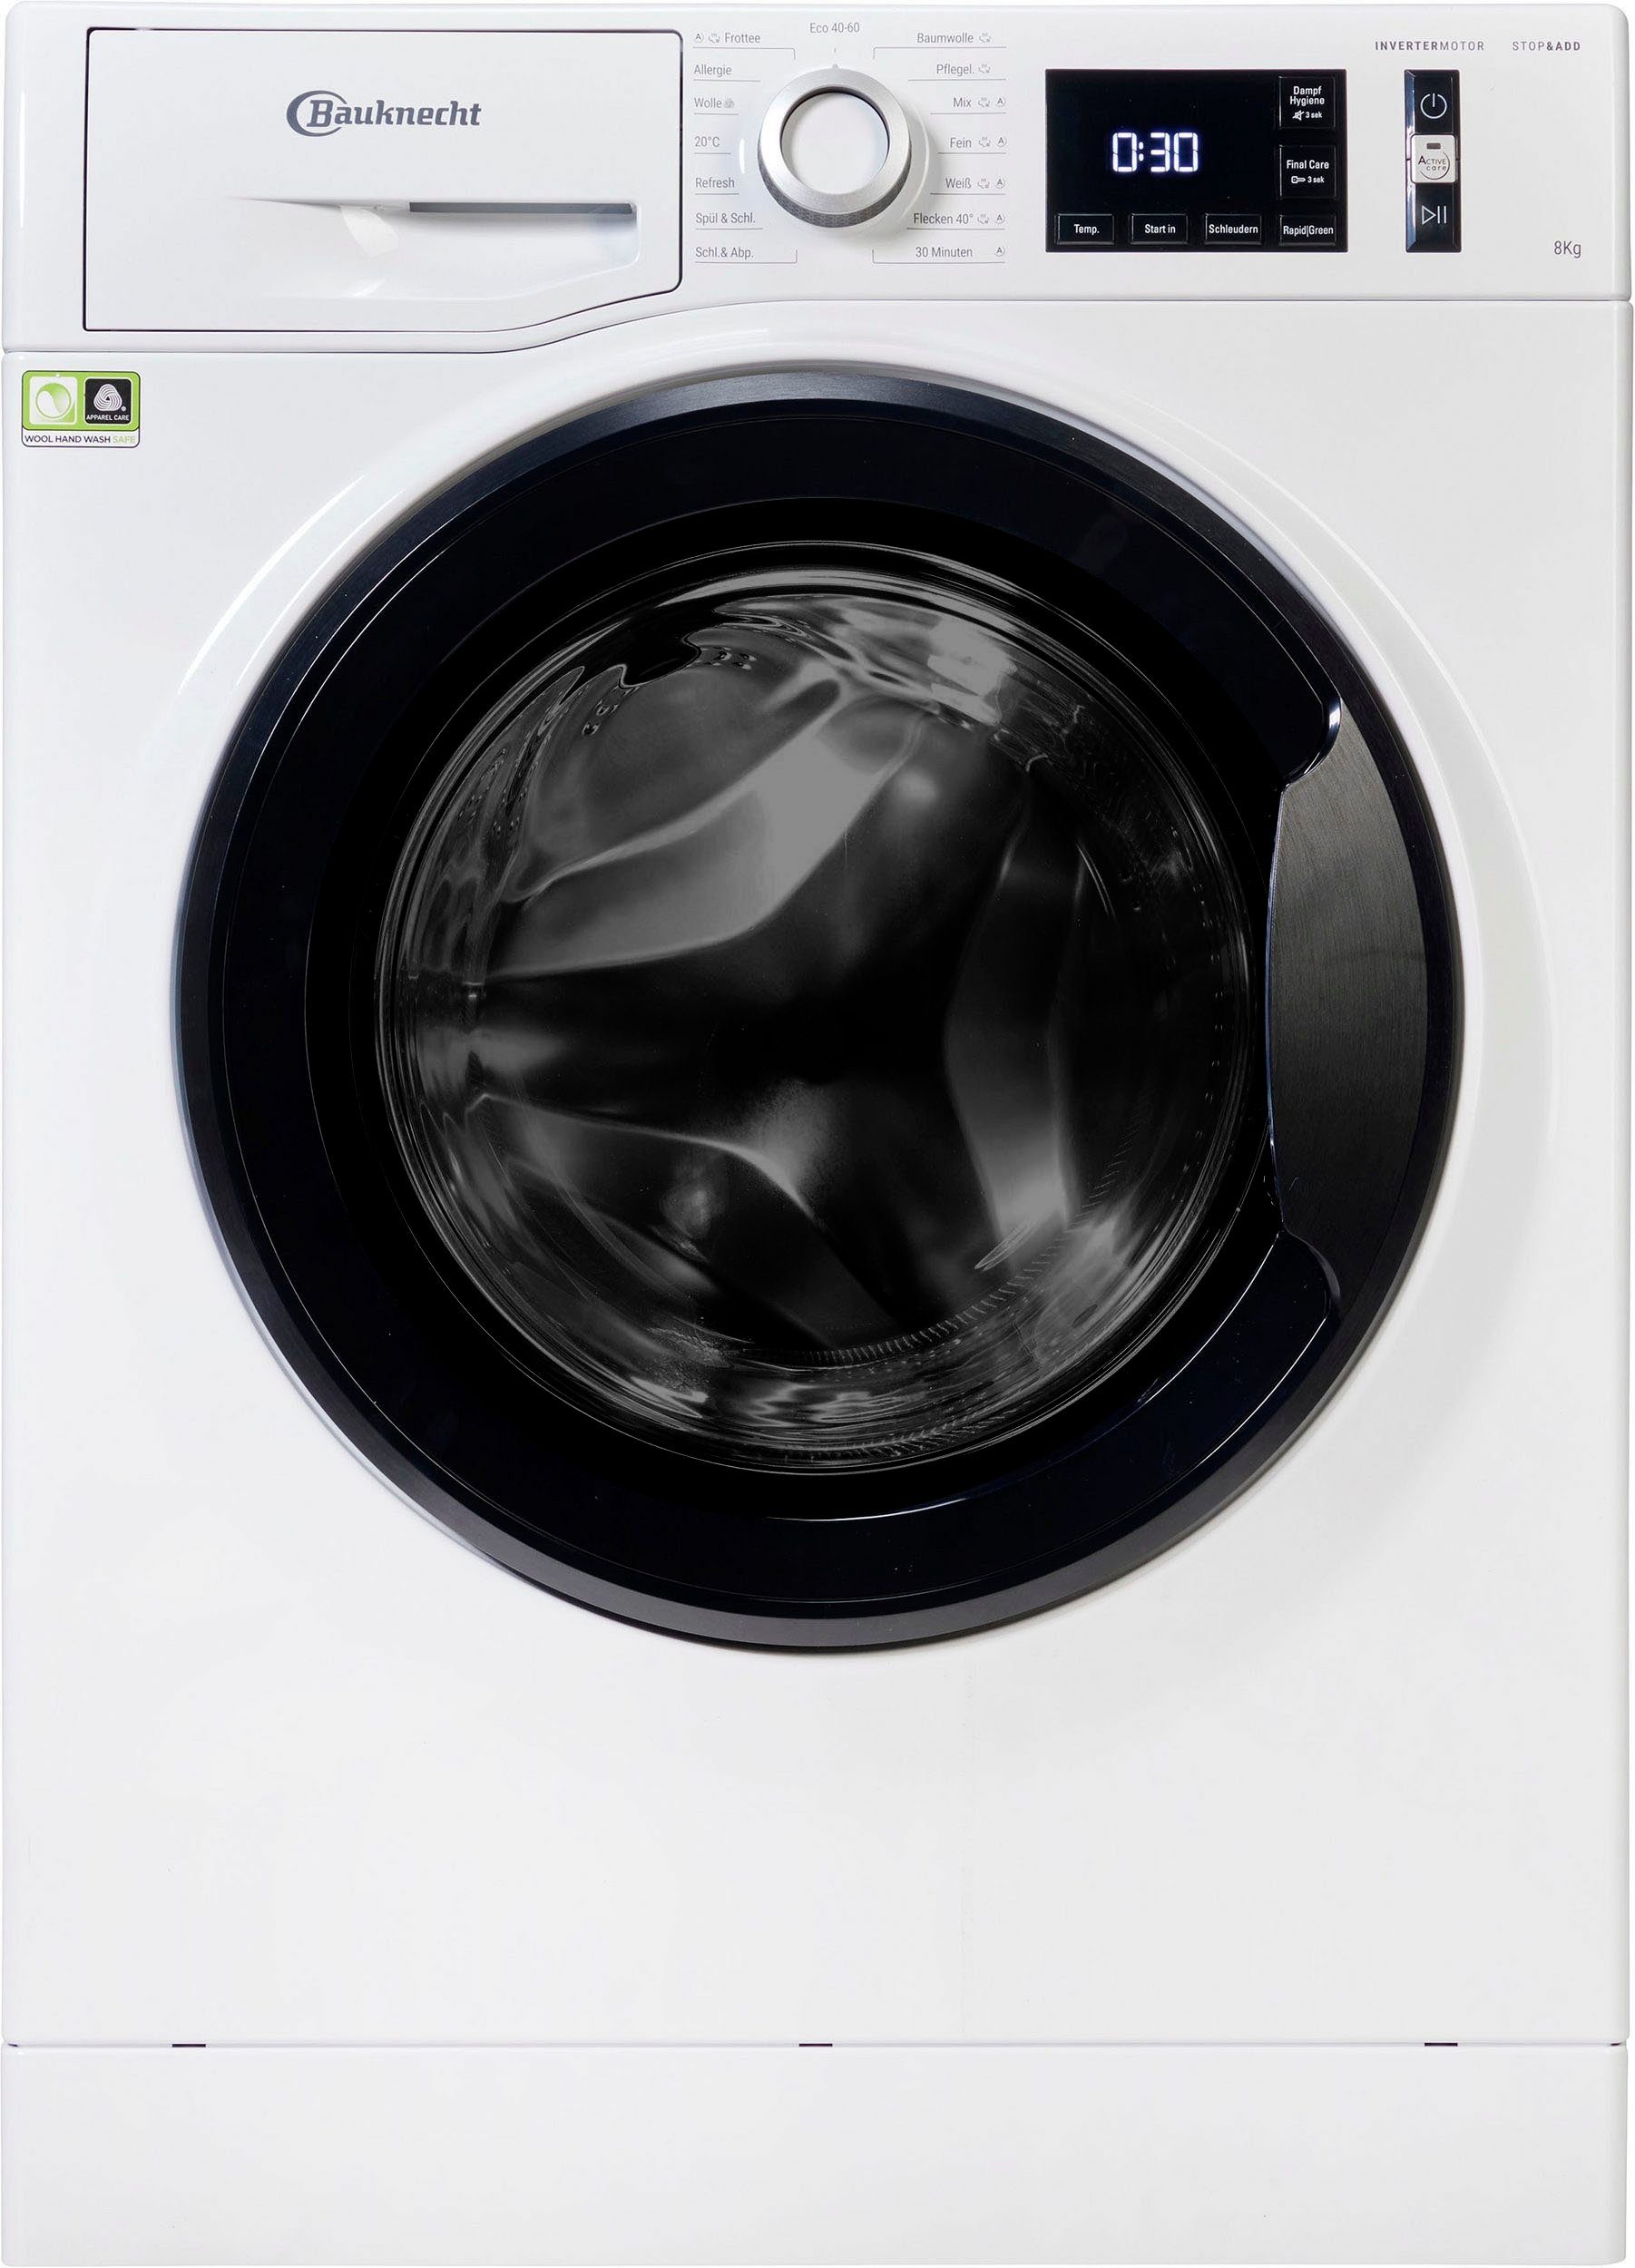 BAUKNECHT Waschmaschine SUPER U/min, 8464A, kg, ECO 8 Jahre 4 Herstellergarantie 1400